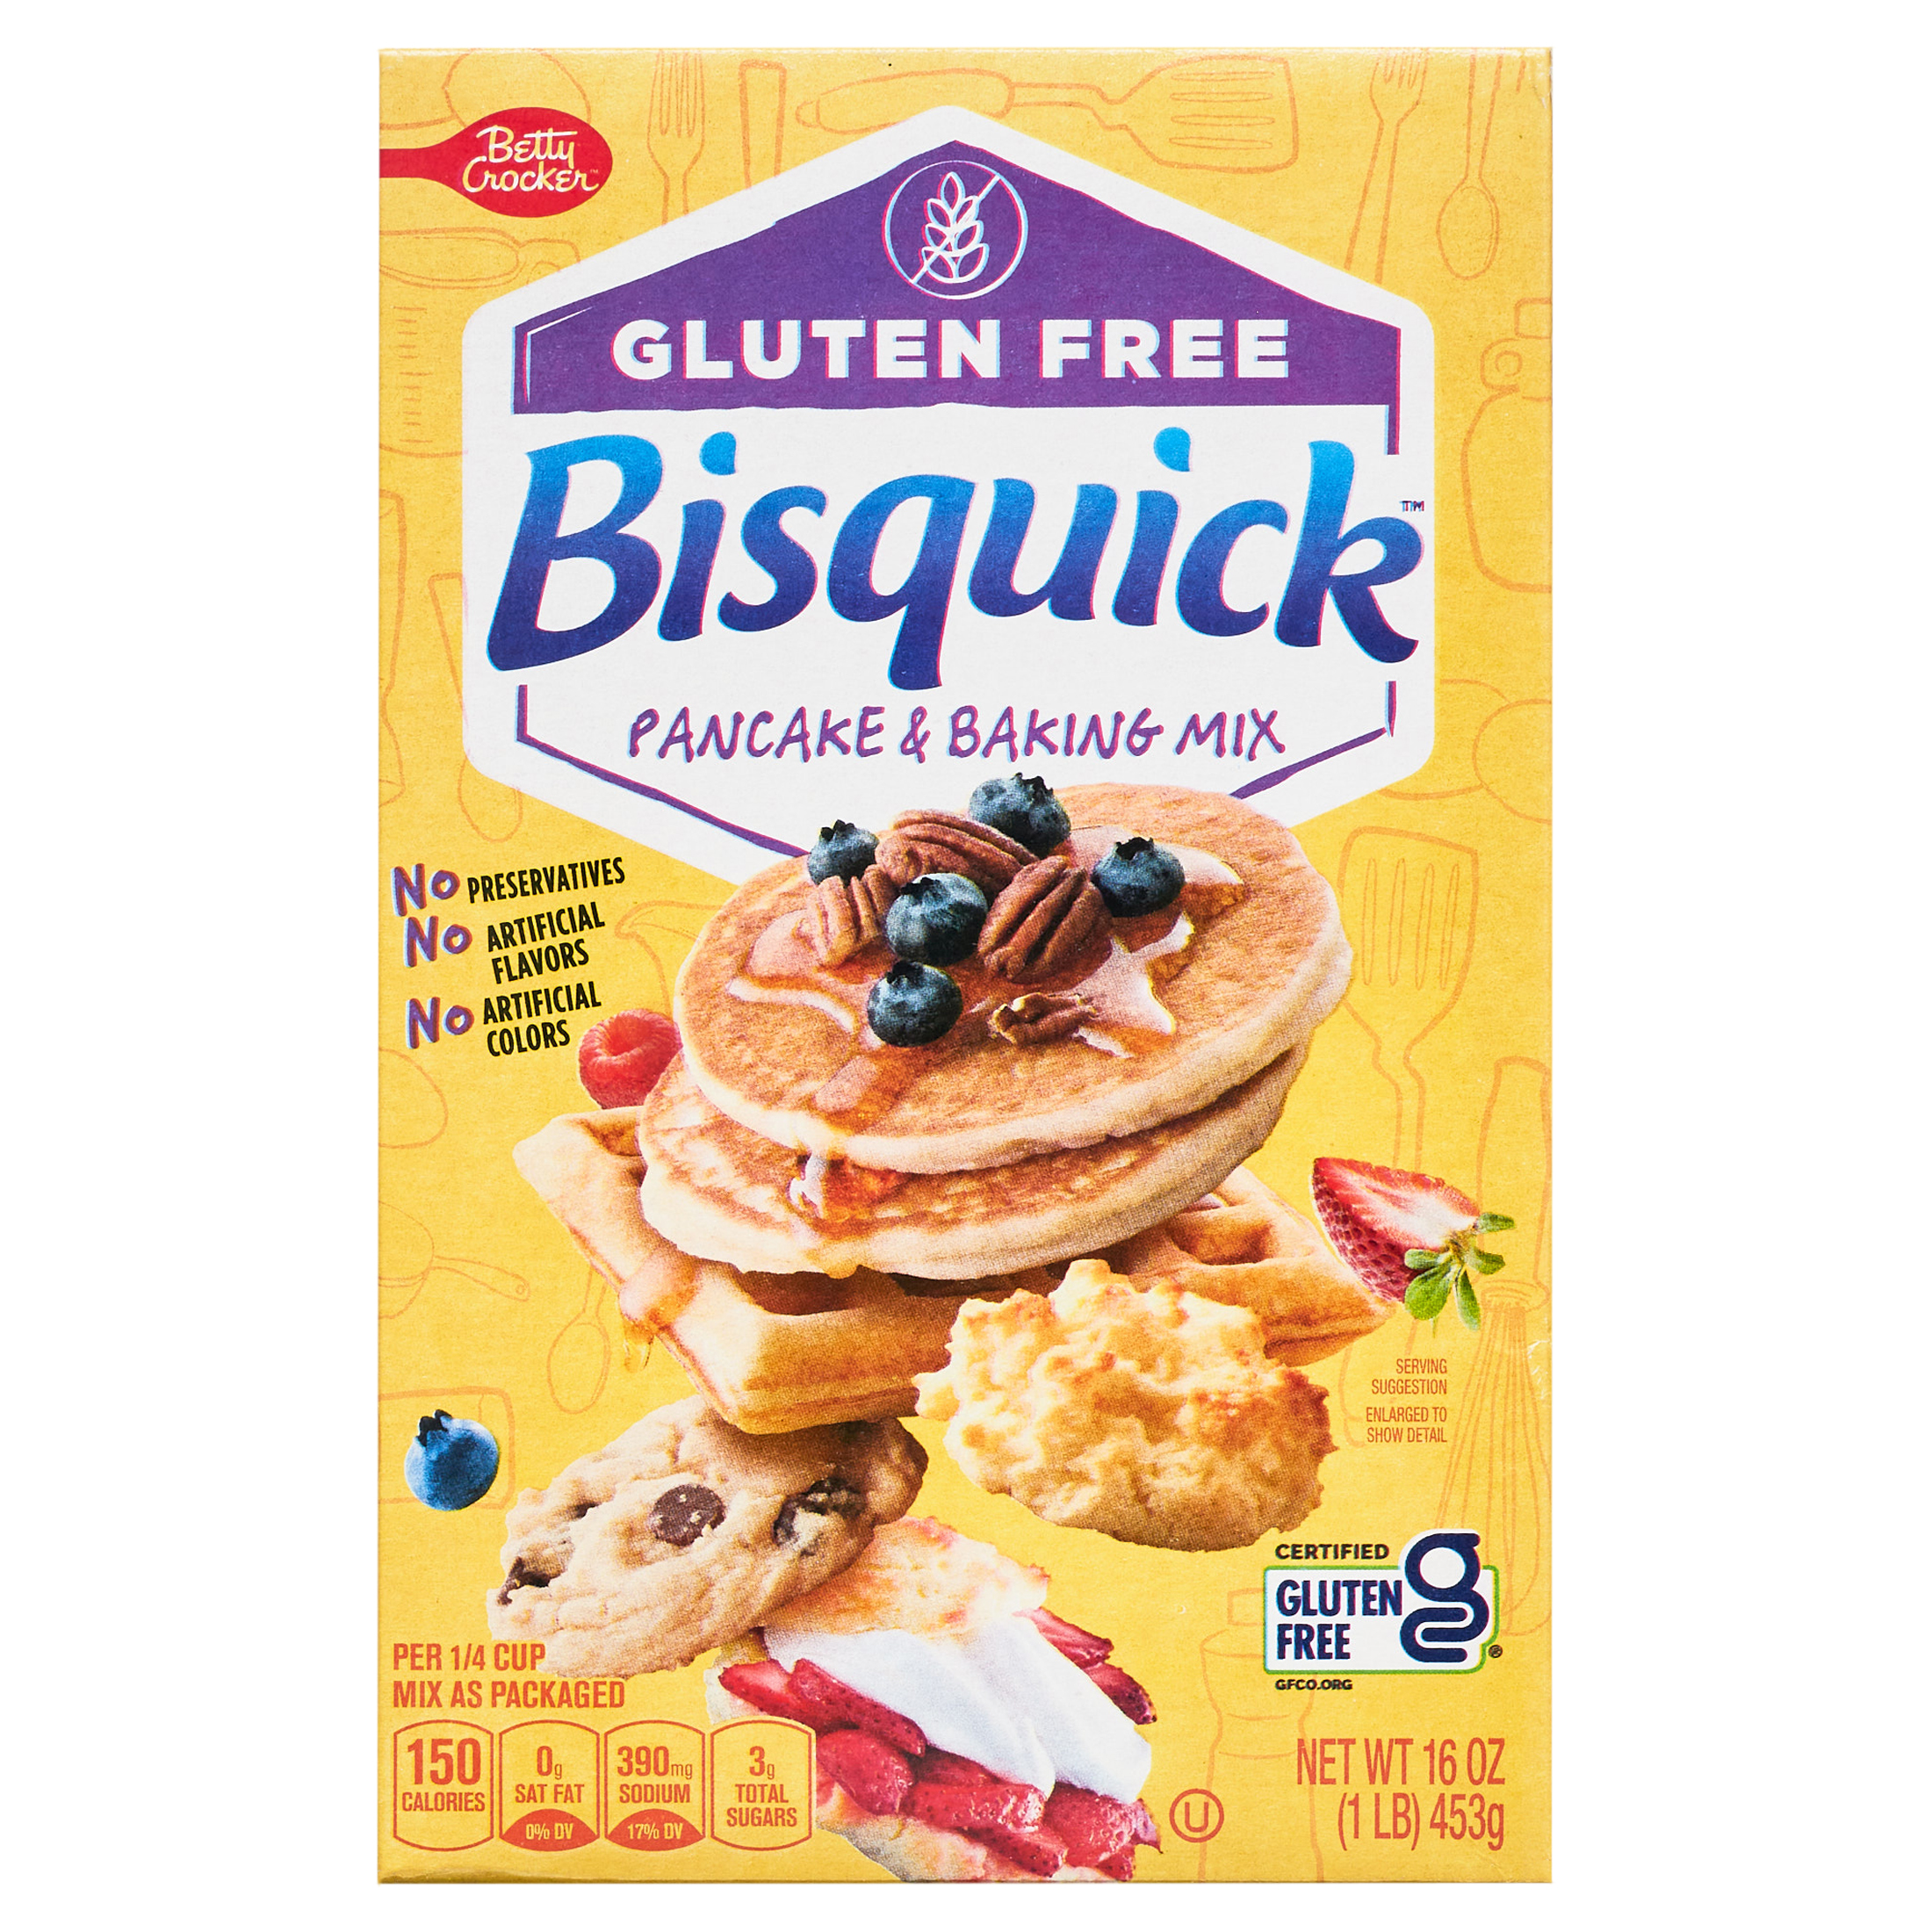 Betty Crocker Bisquick Pancake & Baking Mix, Gluten Free, 16 oz. - image 1 of 16